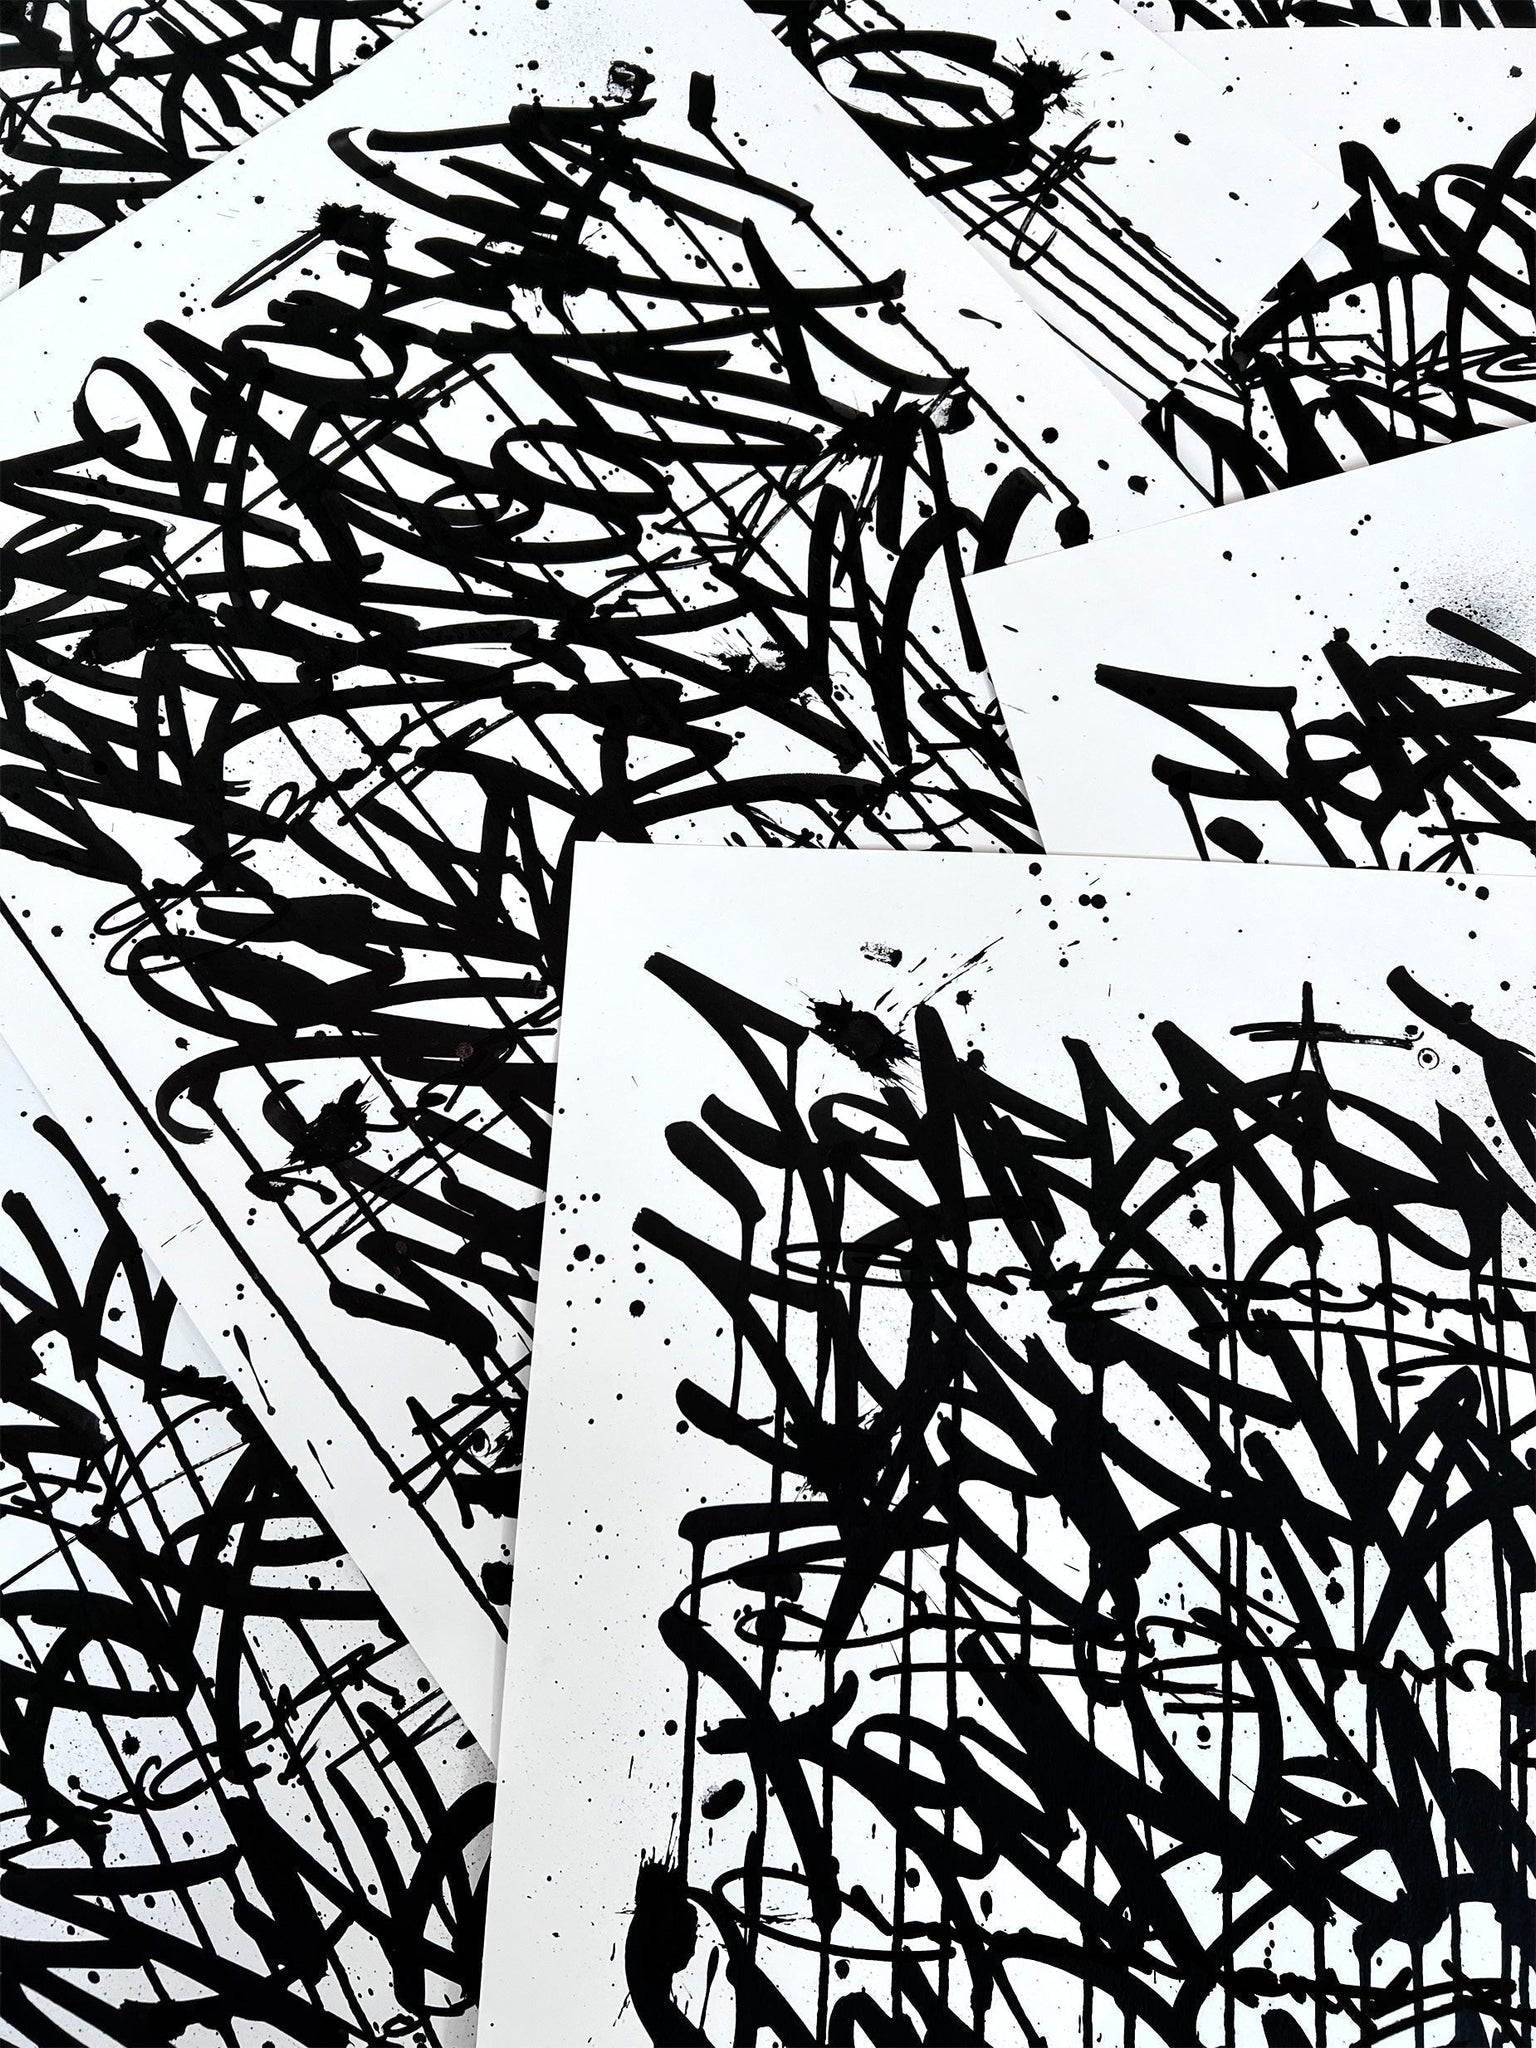 Fear Less Live More 09 - original on paper 50 x 70 cm